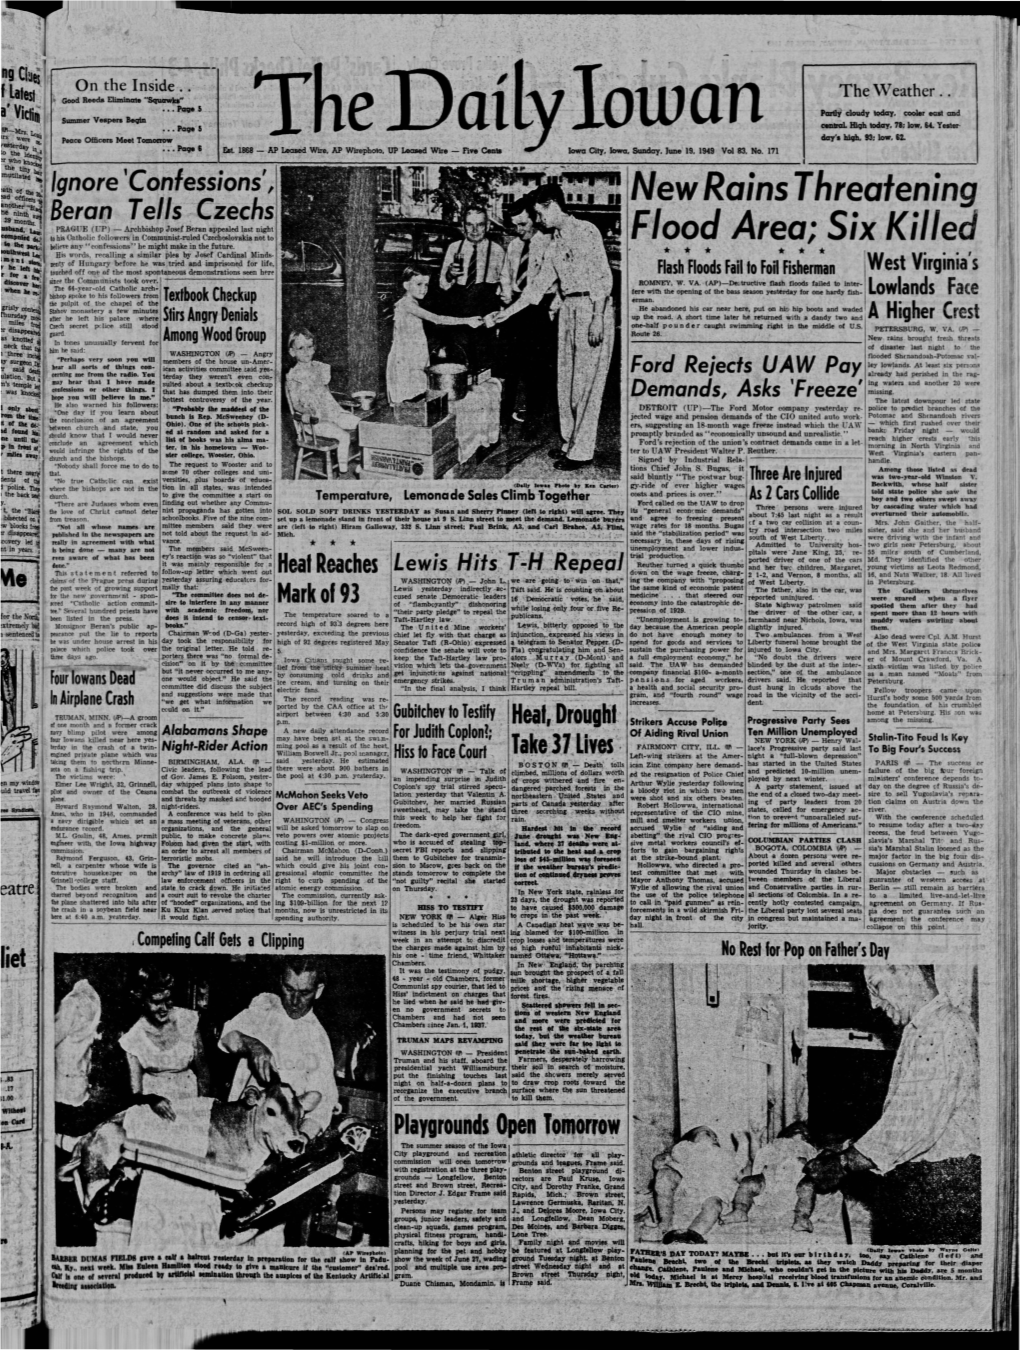 Daily Iowan (Iowa City, Iowa), 1949-06-19